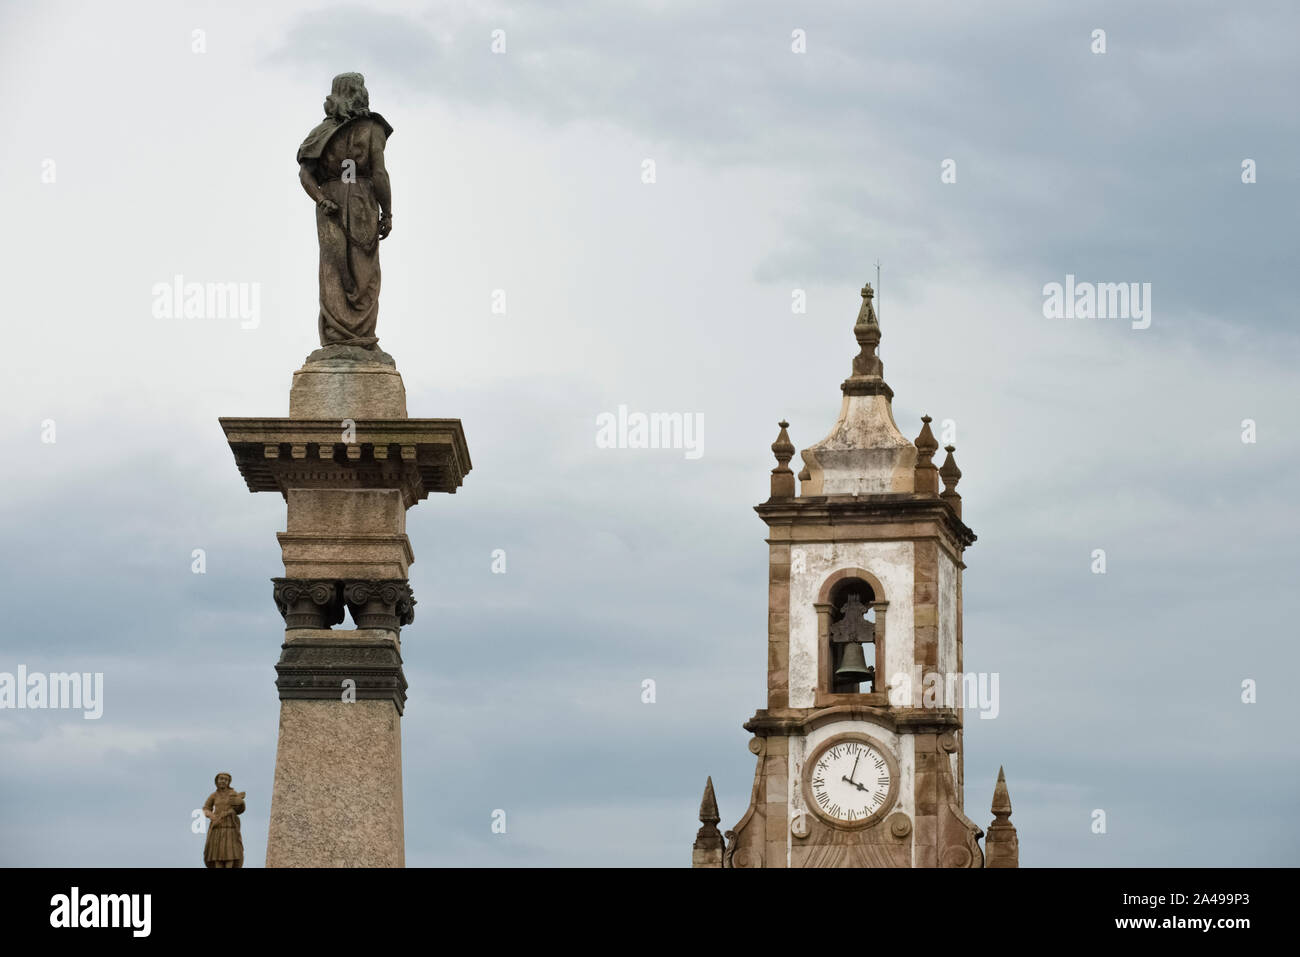 Ouro Preto, Minas Gerais, Brésil - février 27, 2016 : vue arrière de la statue de Tiradentes Banque D'Images